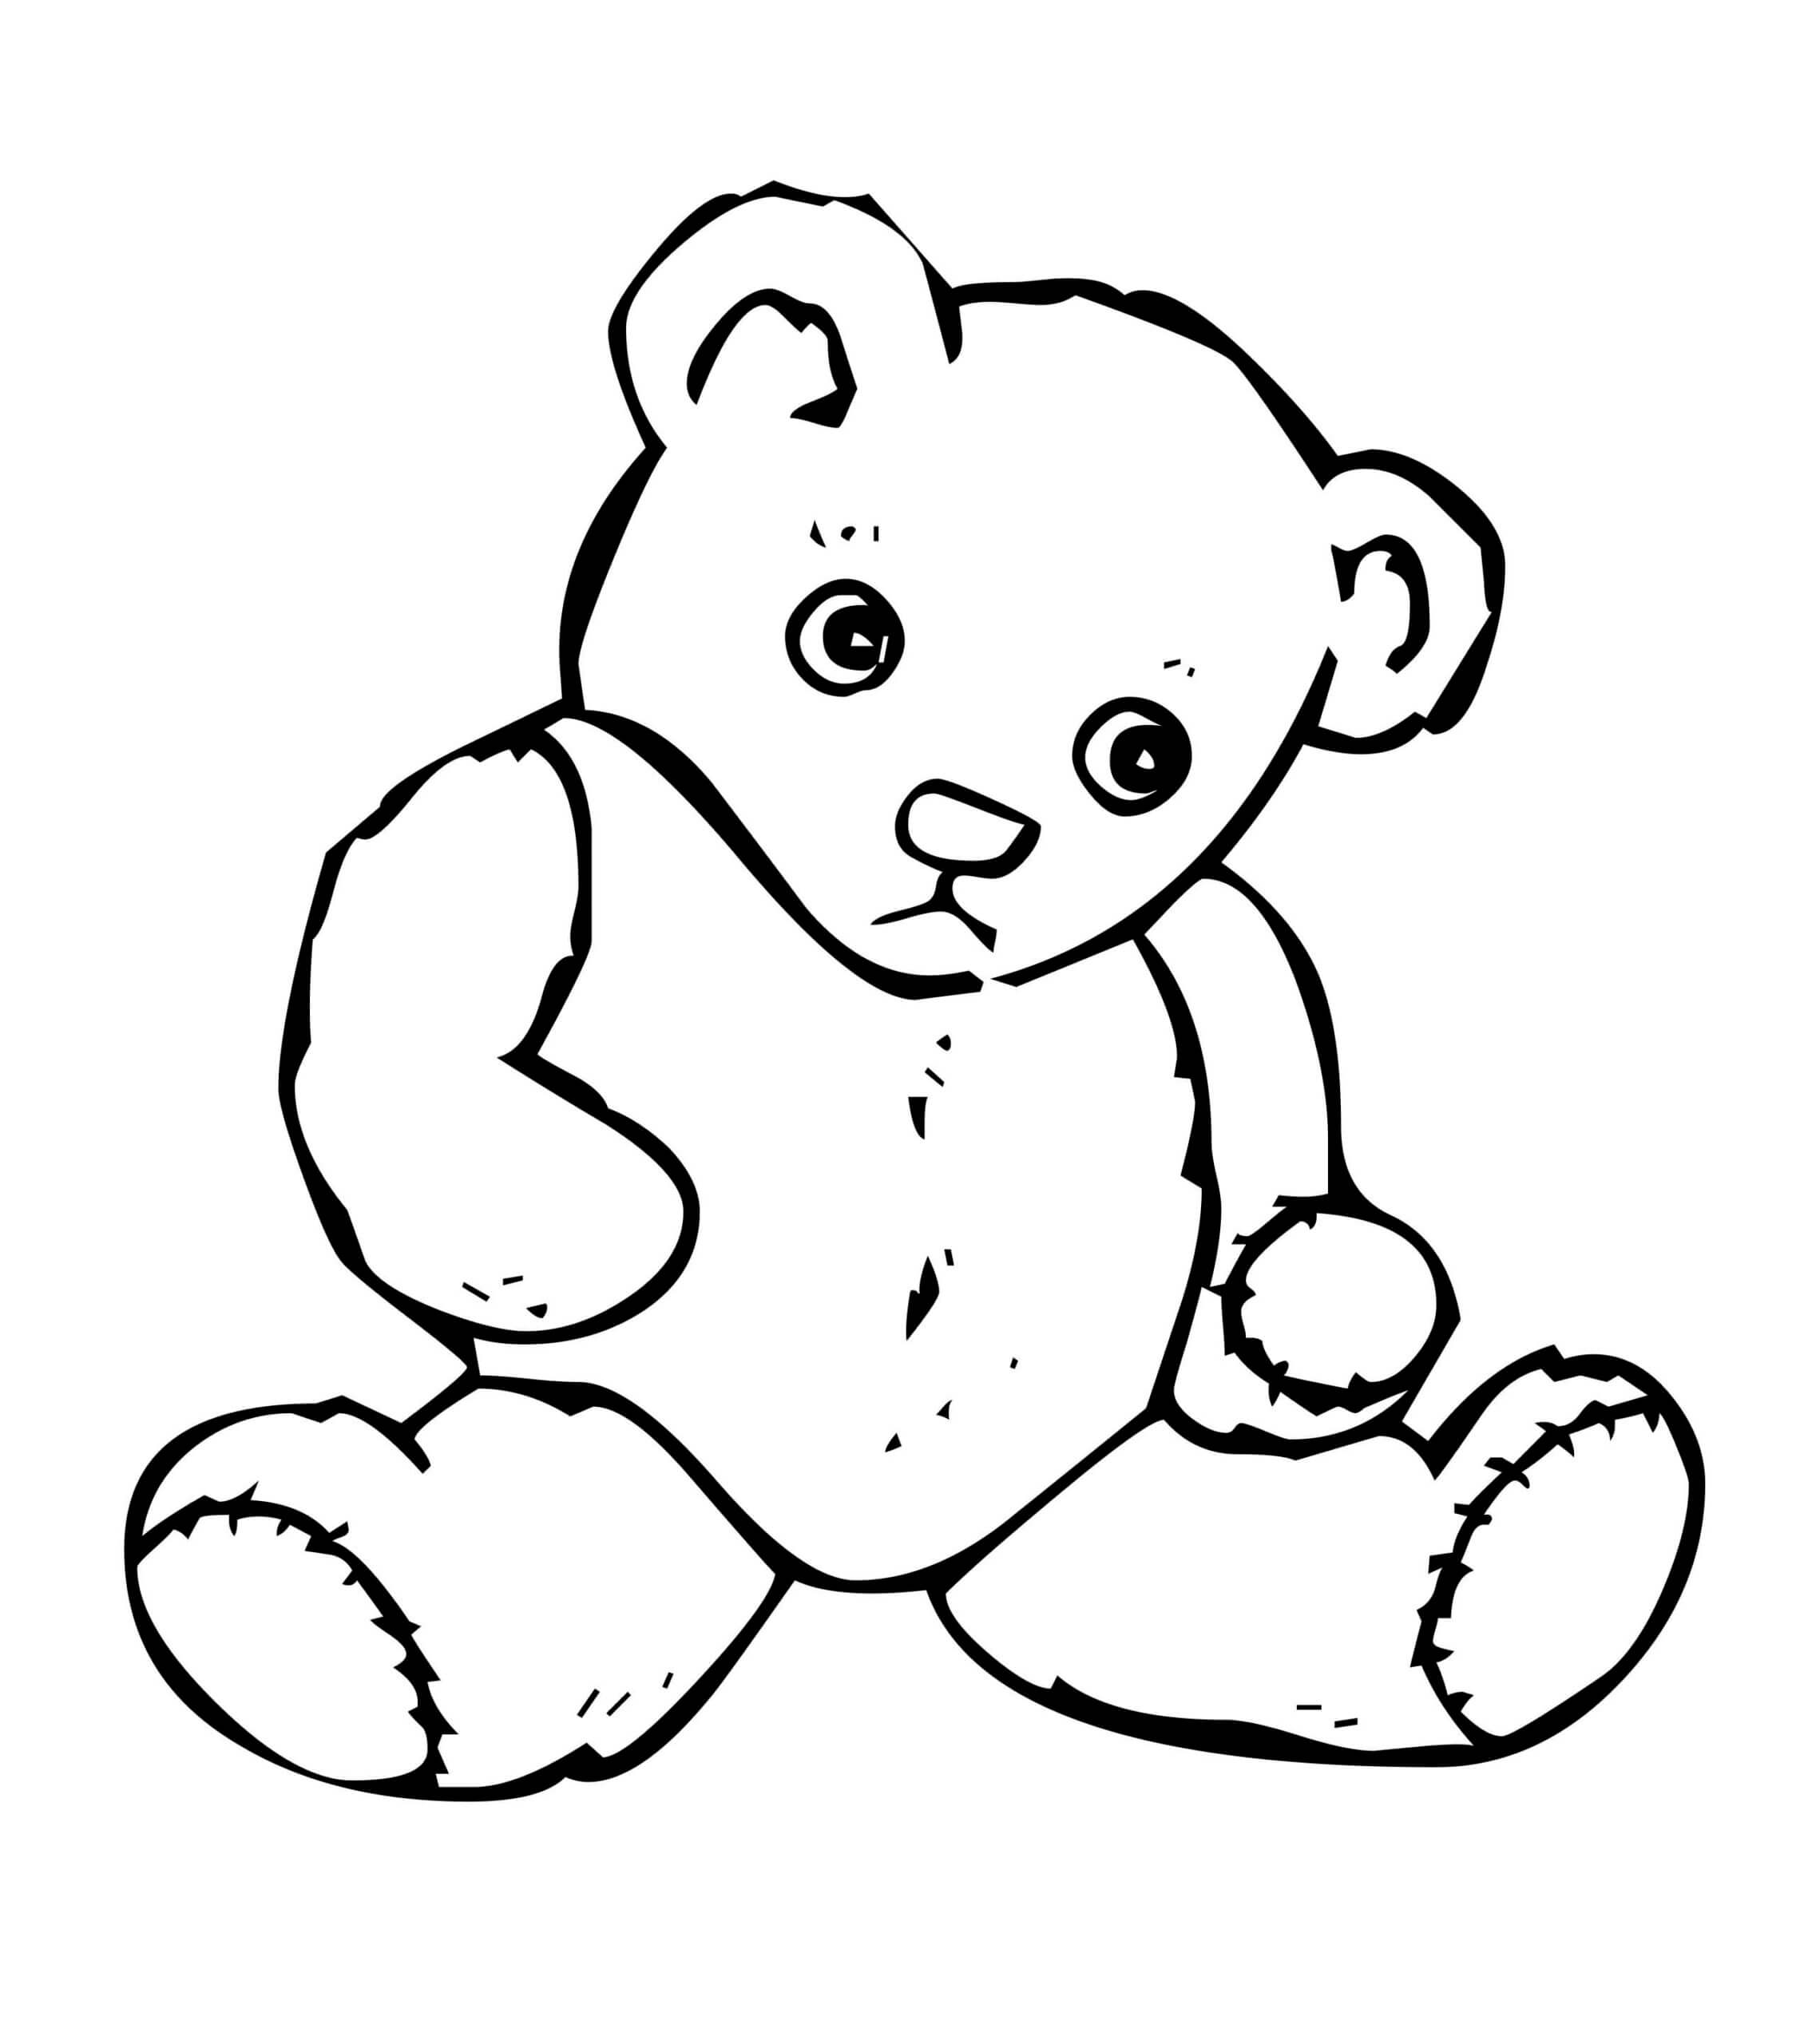 Desenhando Urso De Pelúcia Triste para colorir